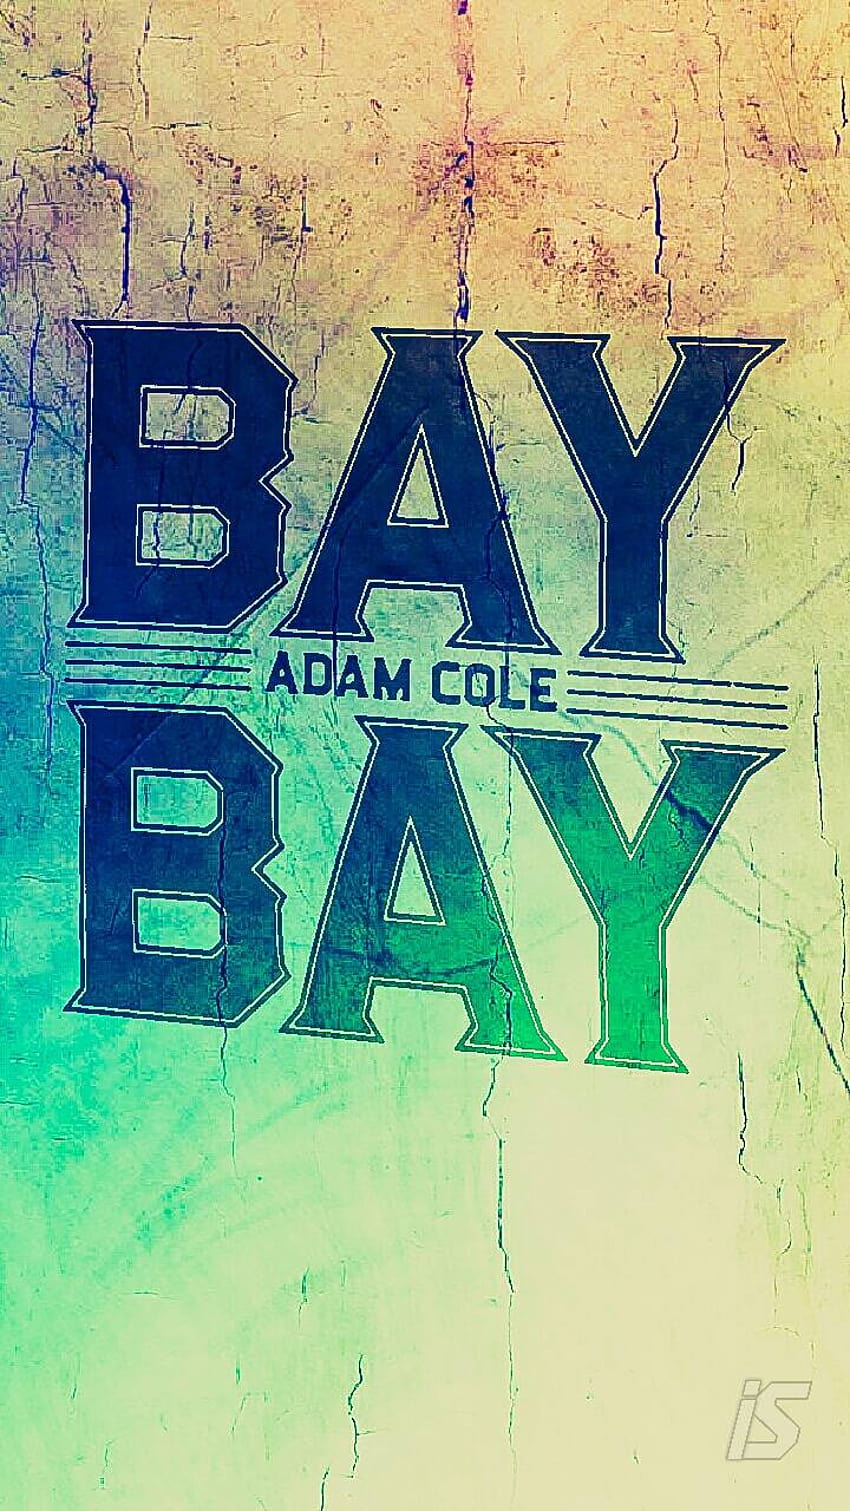 Adam Cole Bay Bay por IsraelSantanaArts, teléfono de adam cole fondo de pantalla del teléfono